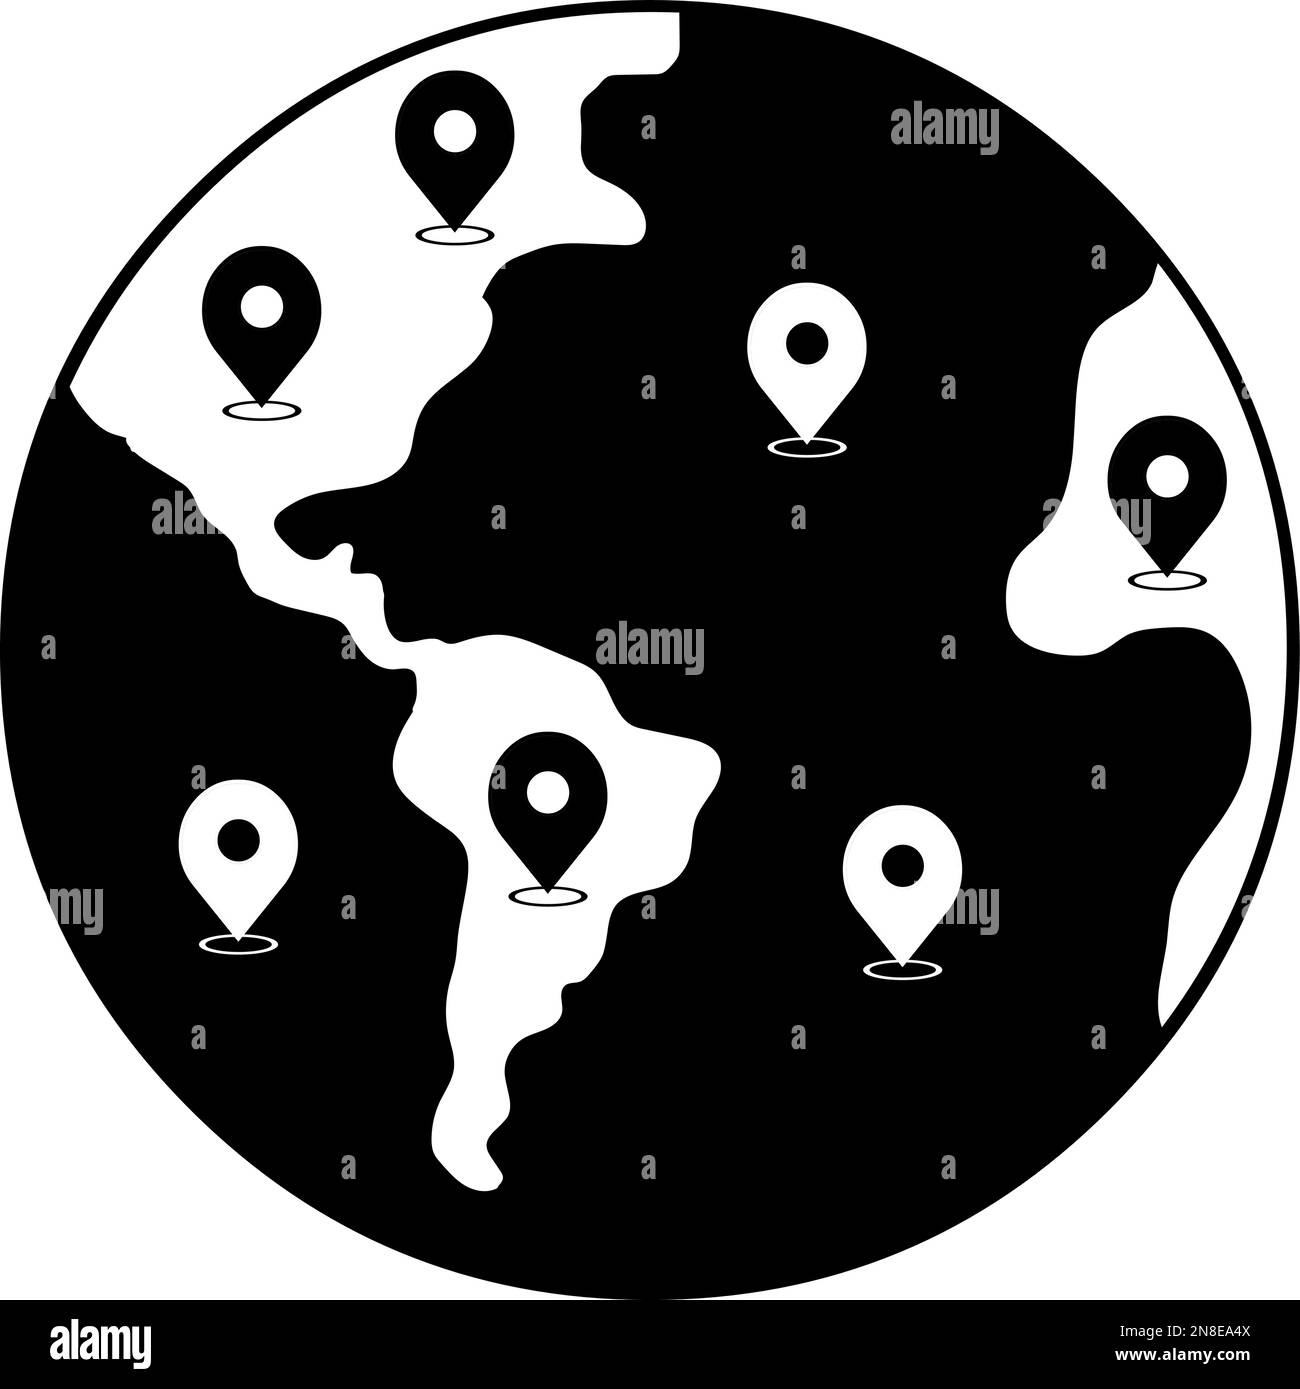 Illustrazione vettoriale del pianeta terra con simboli GPS (Global Positioning System), progettato in bianco e nero Illustrazione Vettoriale